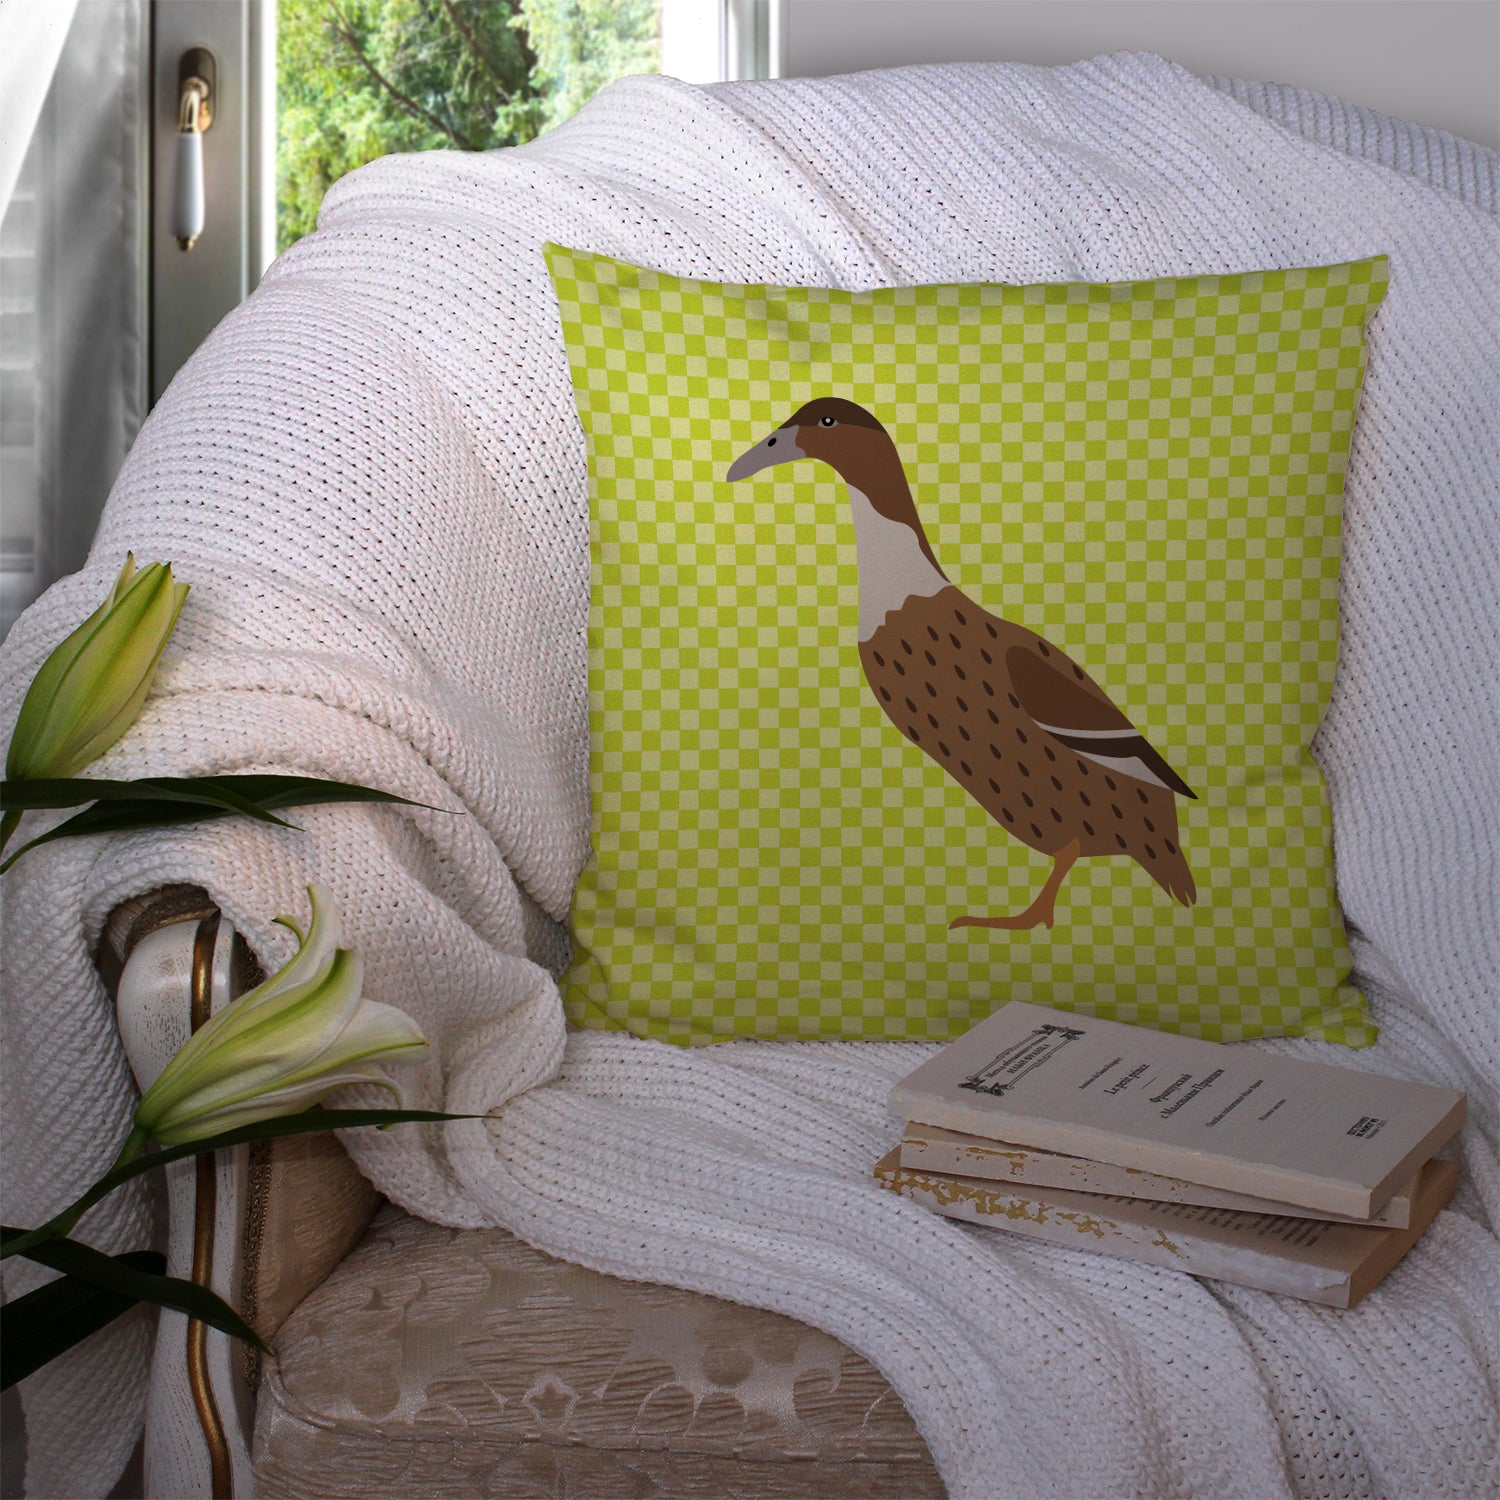 Dutch Hook Bill Duck Green Fabric Decorative Pillow BB7687PW1414 - the-store.com